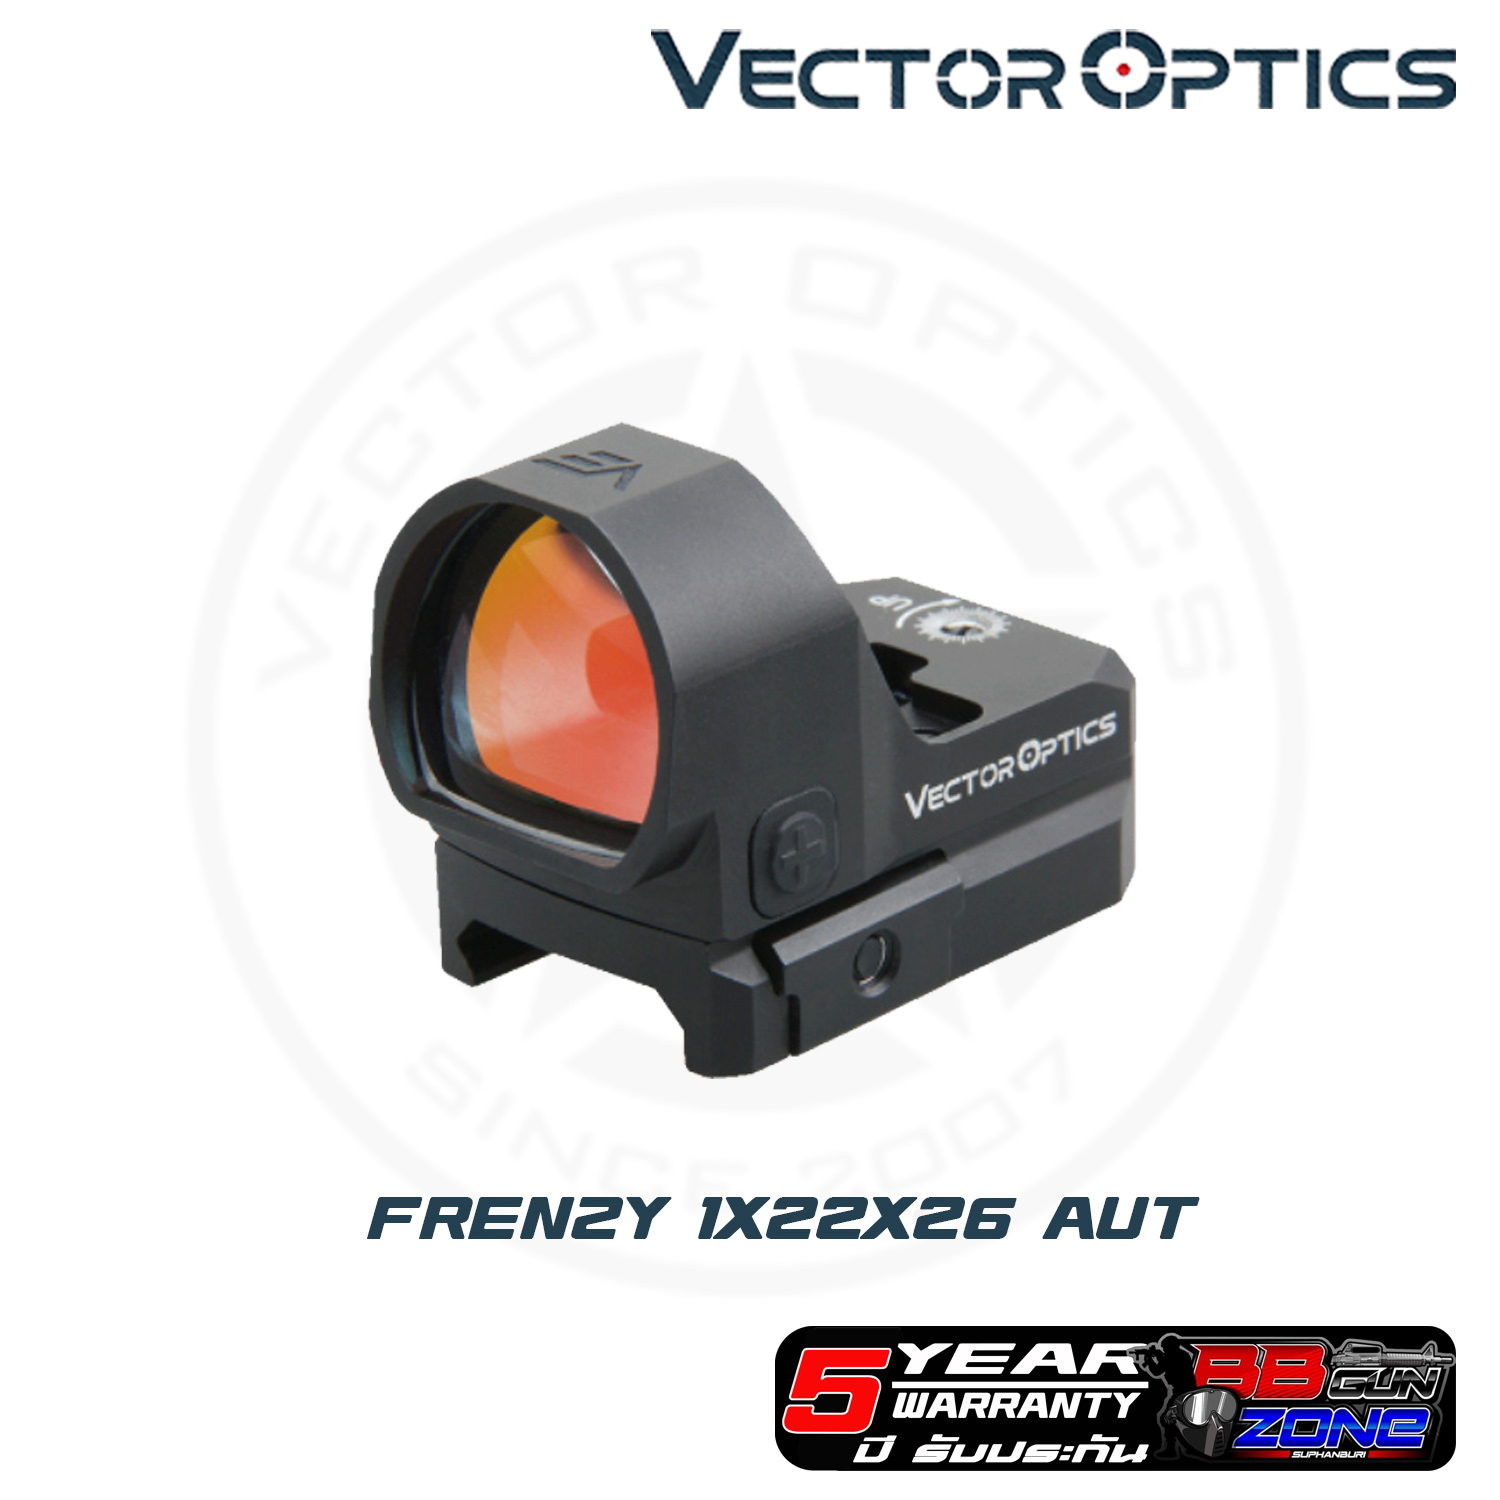 Vector Optics Frenzy 1x22x26  AUT Auto Light Sensor